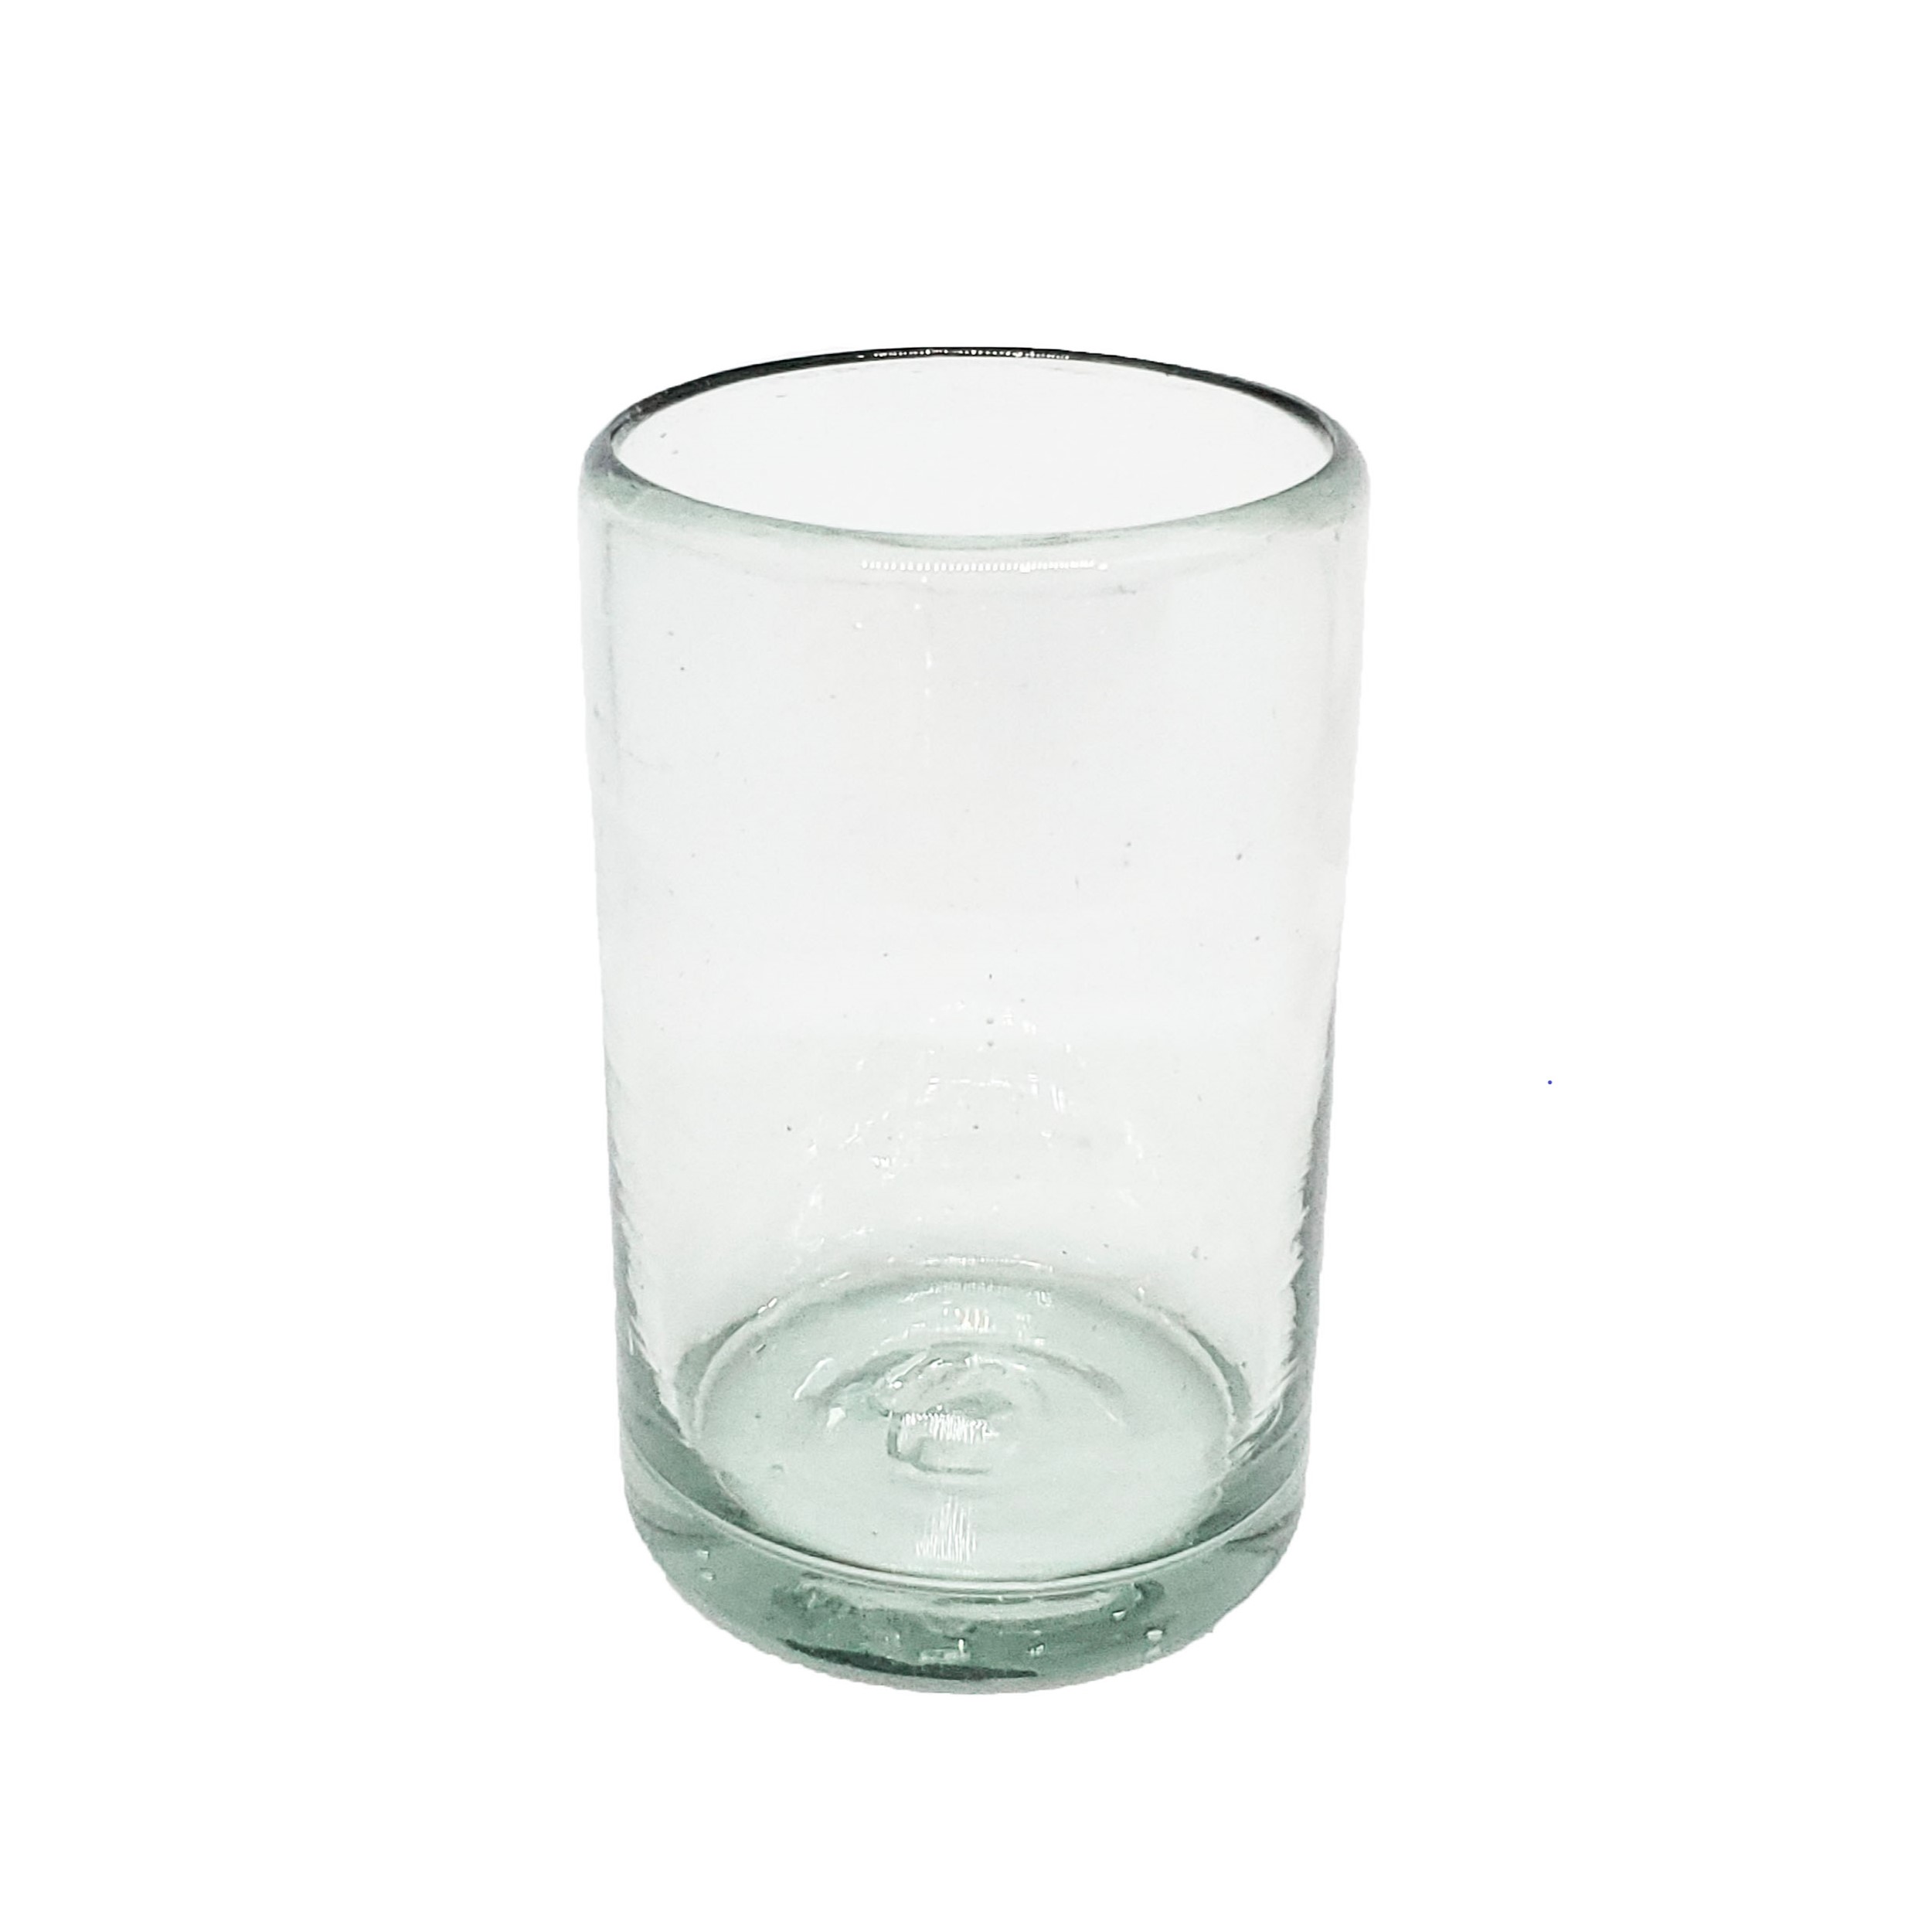 Novedades / Juego de 6 vasos Jugo 9oz Transparentes / Éstos artesanales vasos le darán un toque clásico a su bebida favorita.